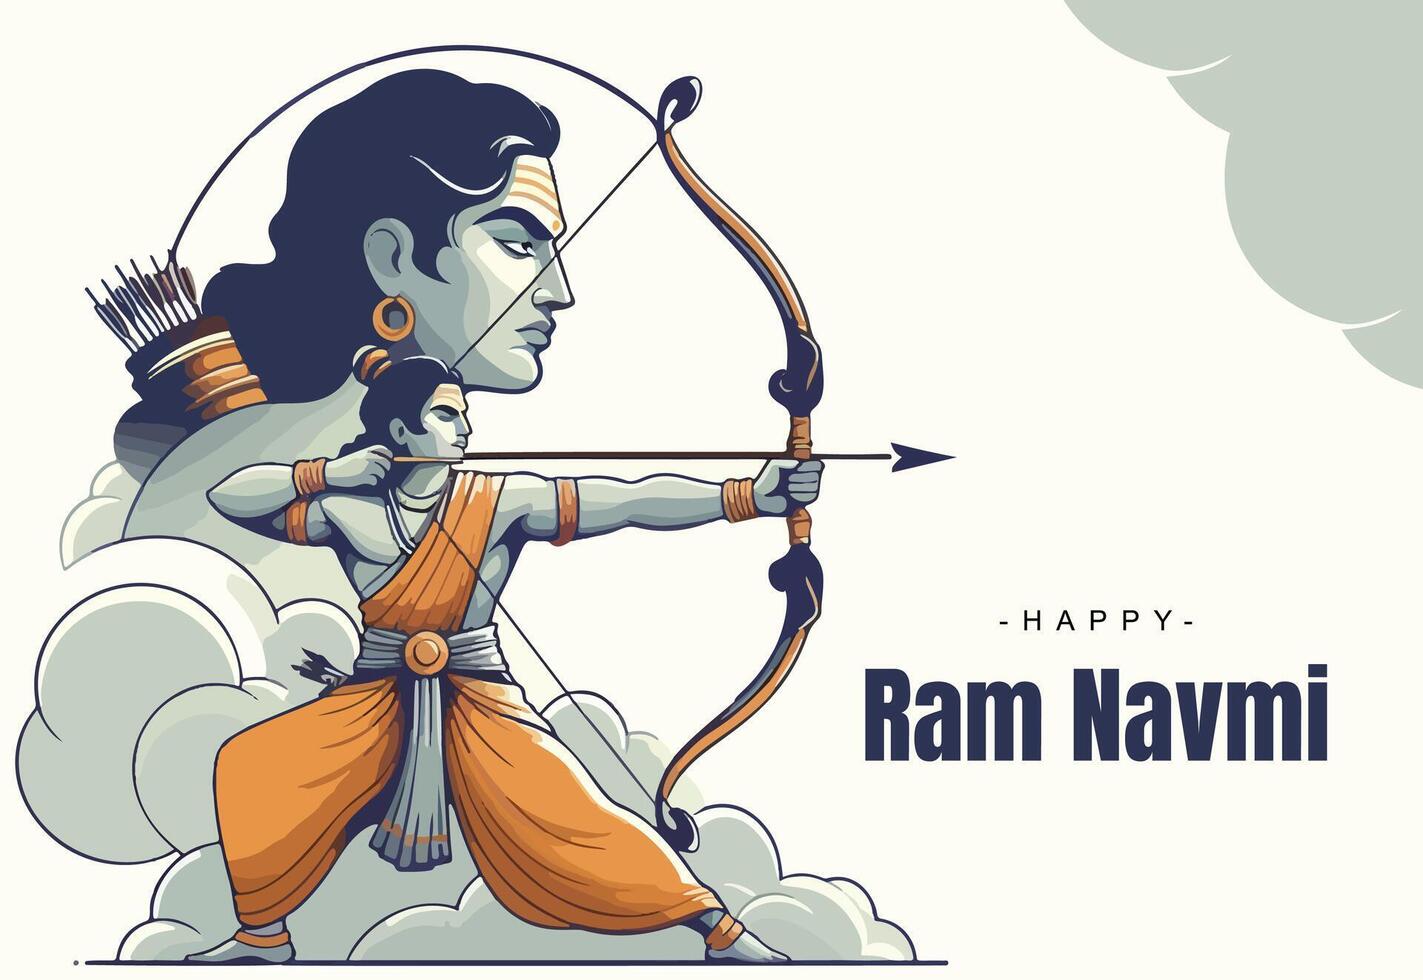 Ram Navami Social media template vector